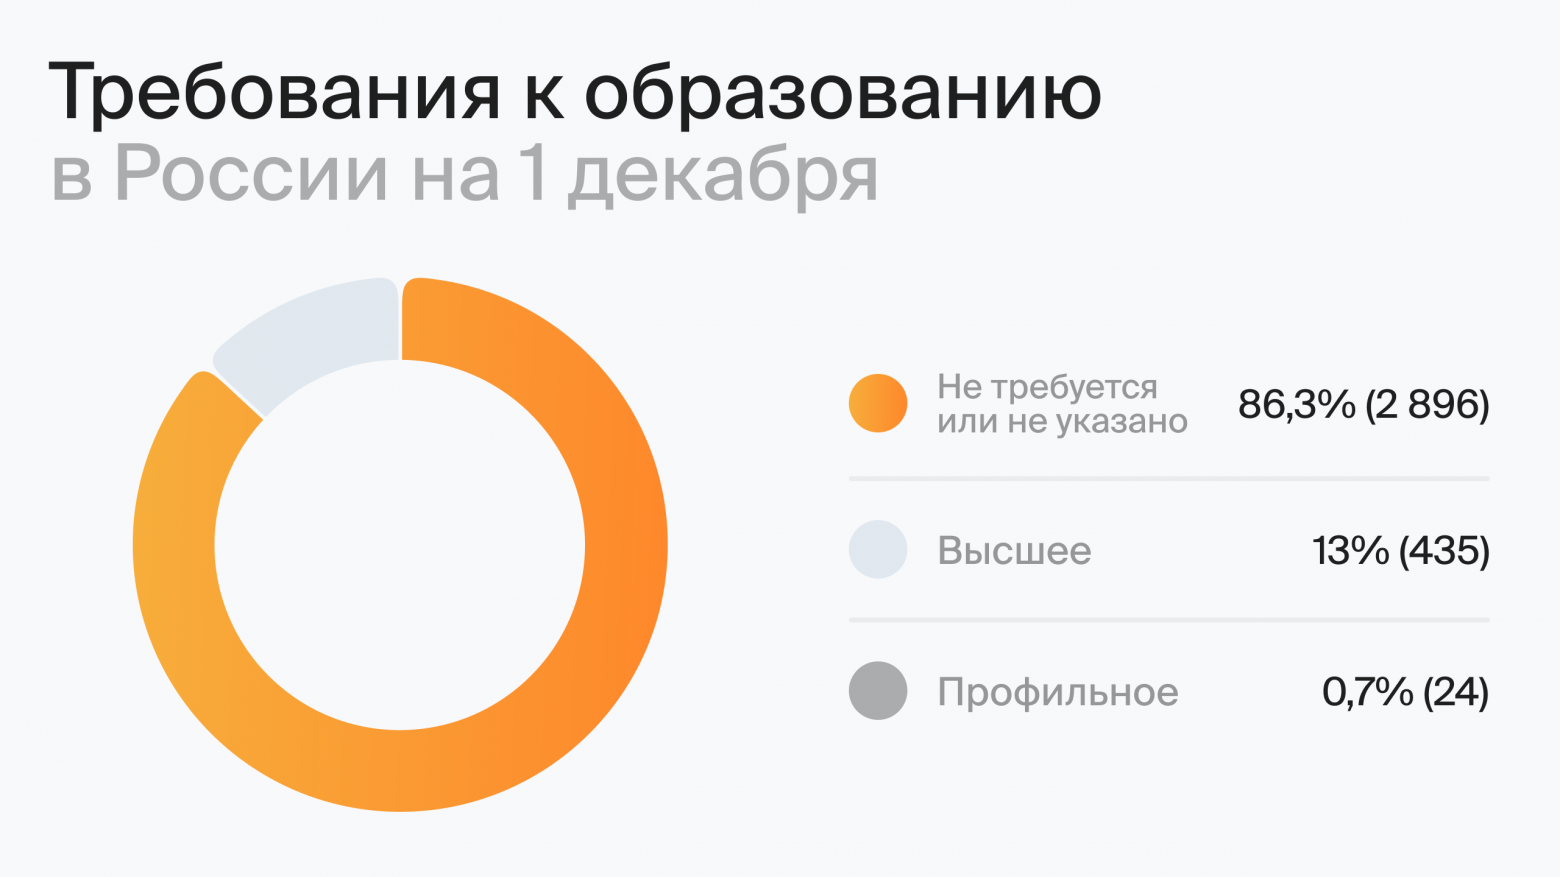 Требования к образованию в России на 1 декабря (по данным hh.ru)